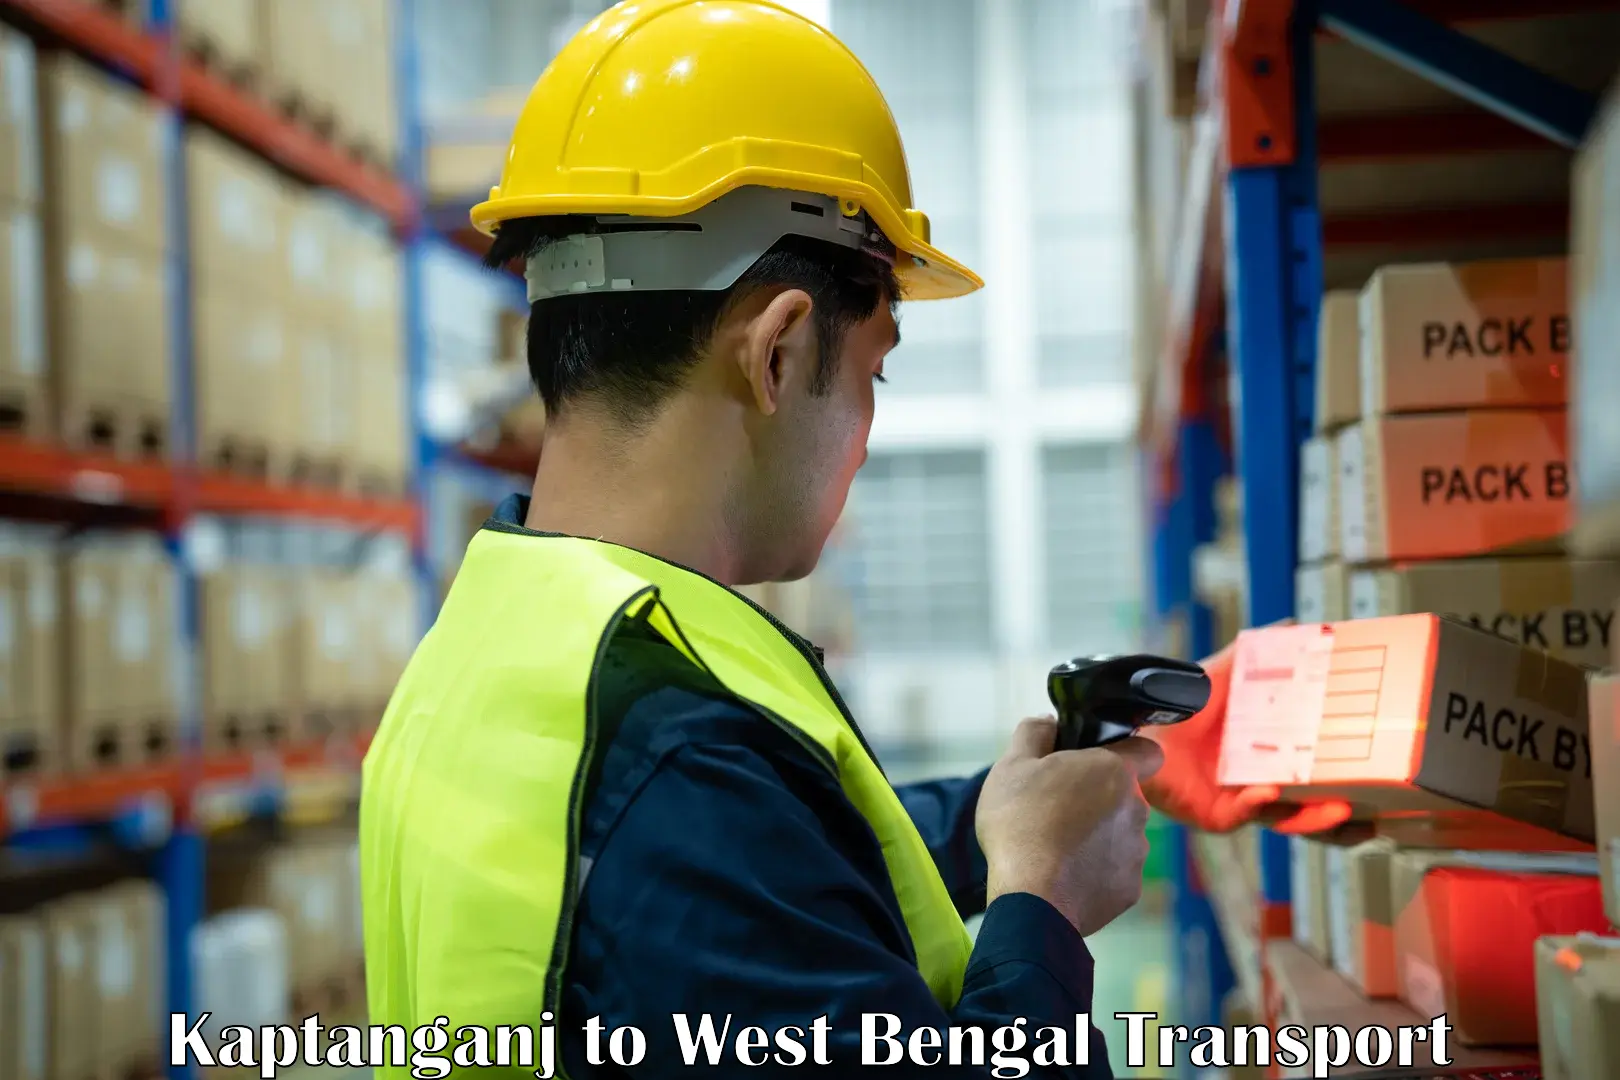 Shipping partner Kaptanganj to West Bengal